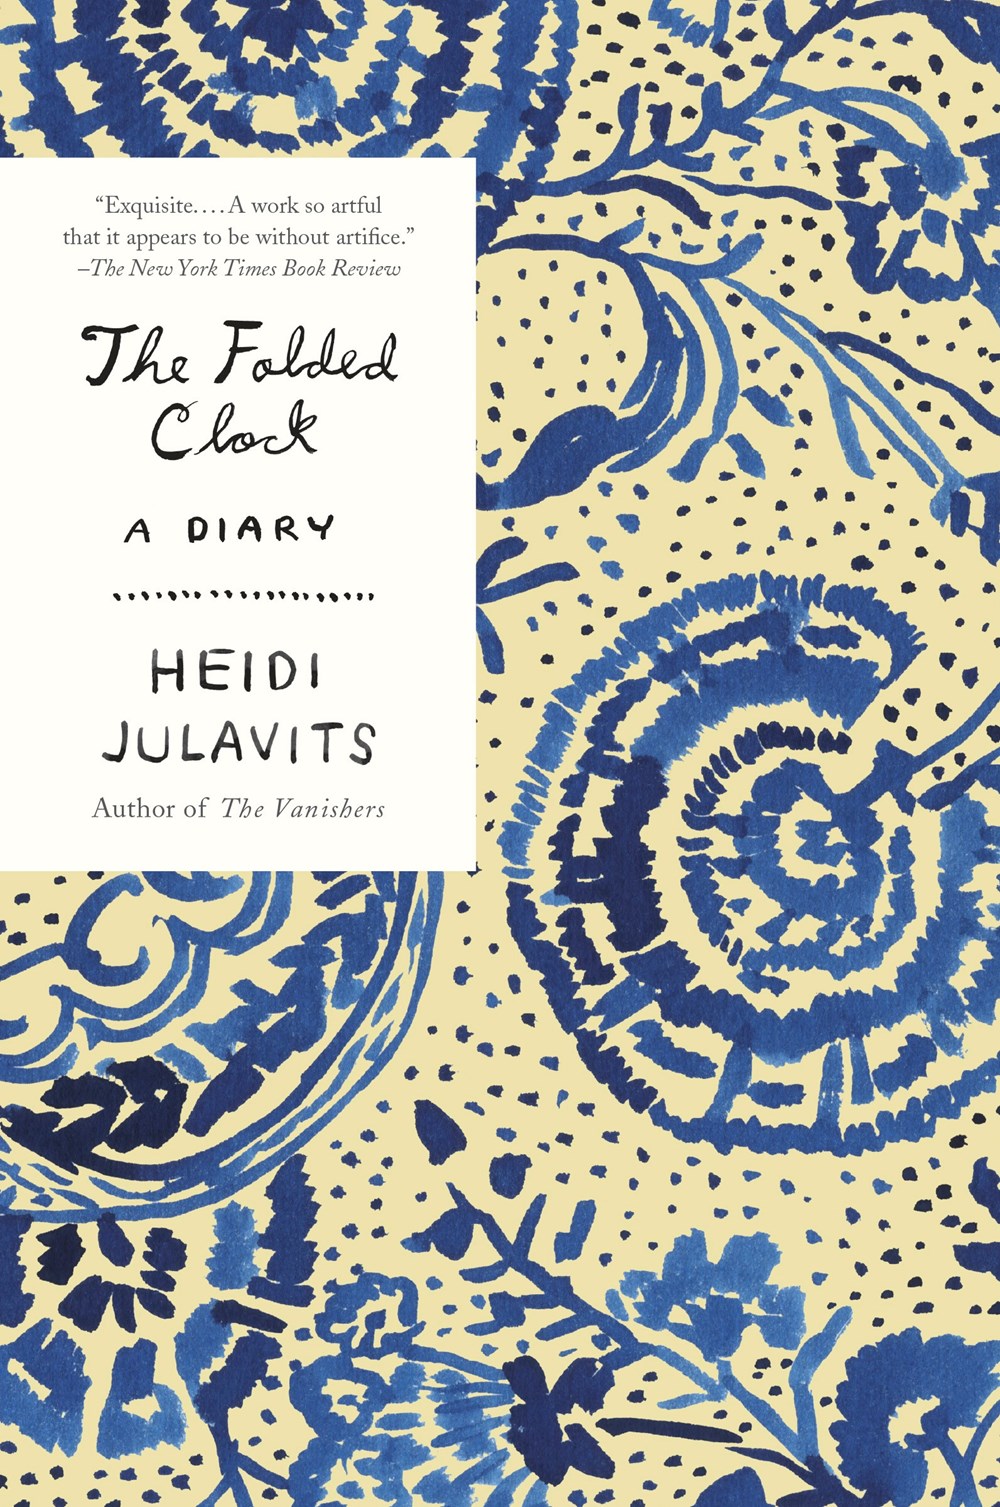 The Folded Clock: A Diary by Heidi Julavits